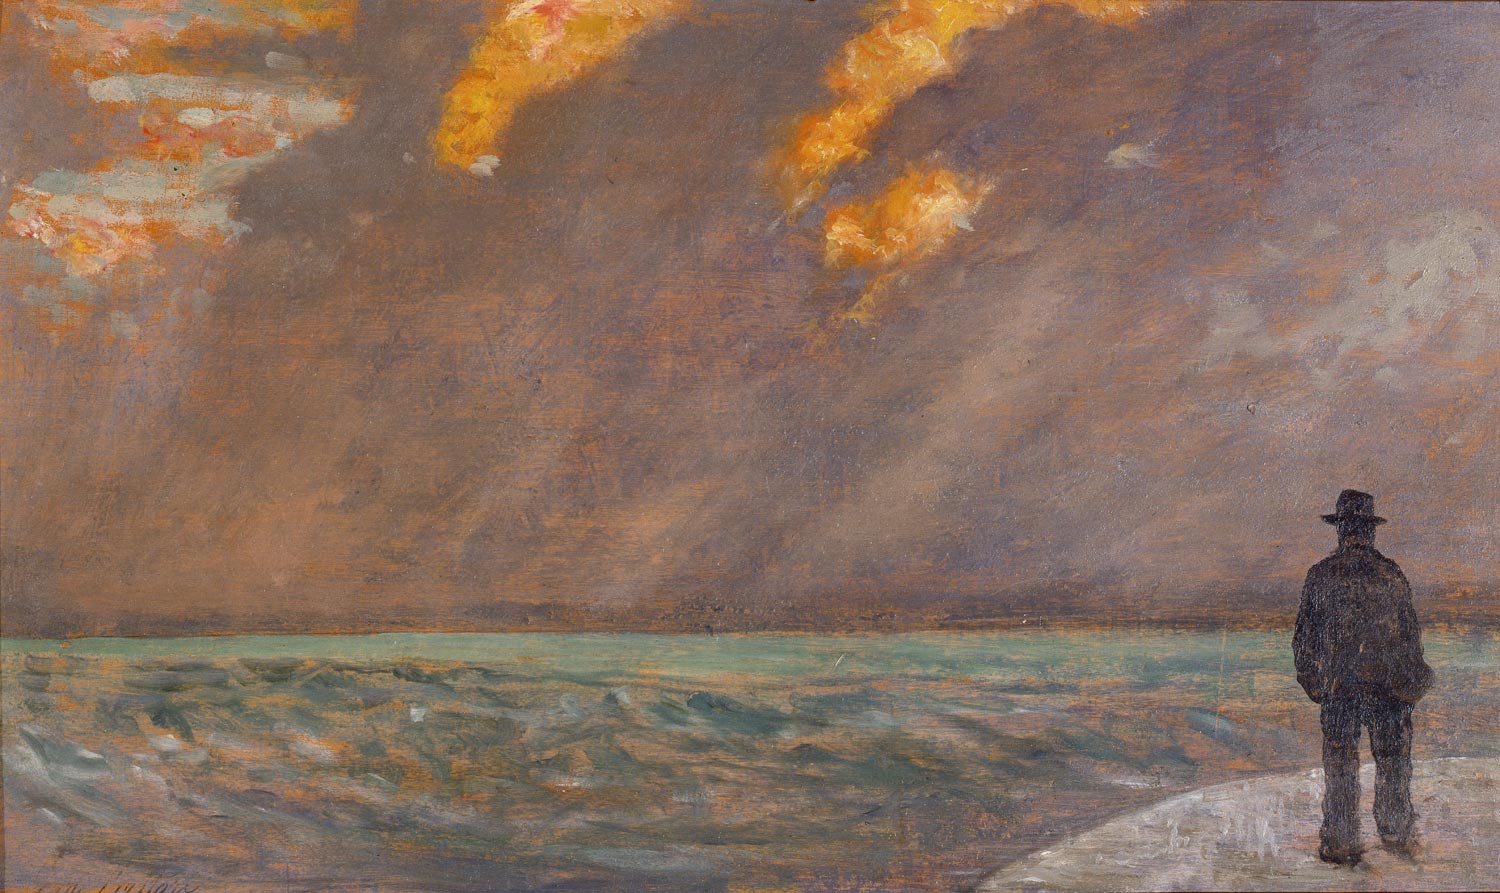 Giovanni Fattori, Tramonto sul mare (1894-1890 circa; olio su tavola, 19,1 x 32,2 cm; Firenze, Galleria d’Arte Moderna di Palazzo Pitti)